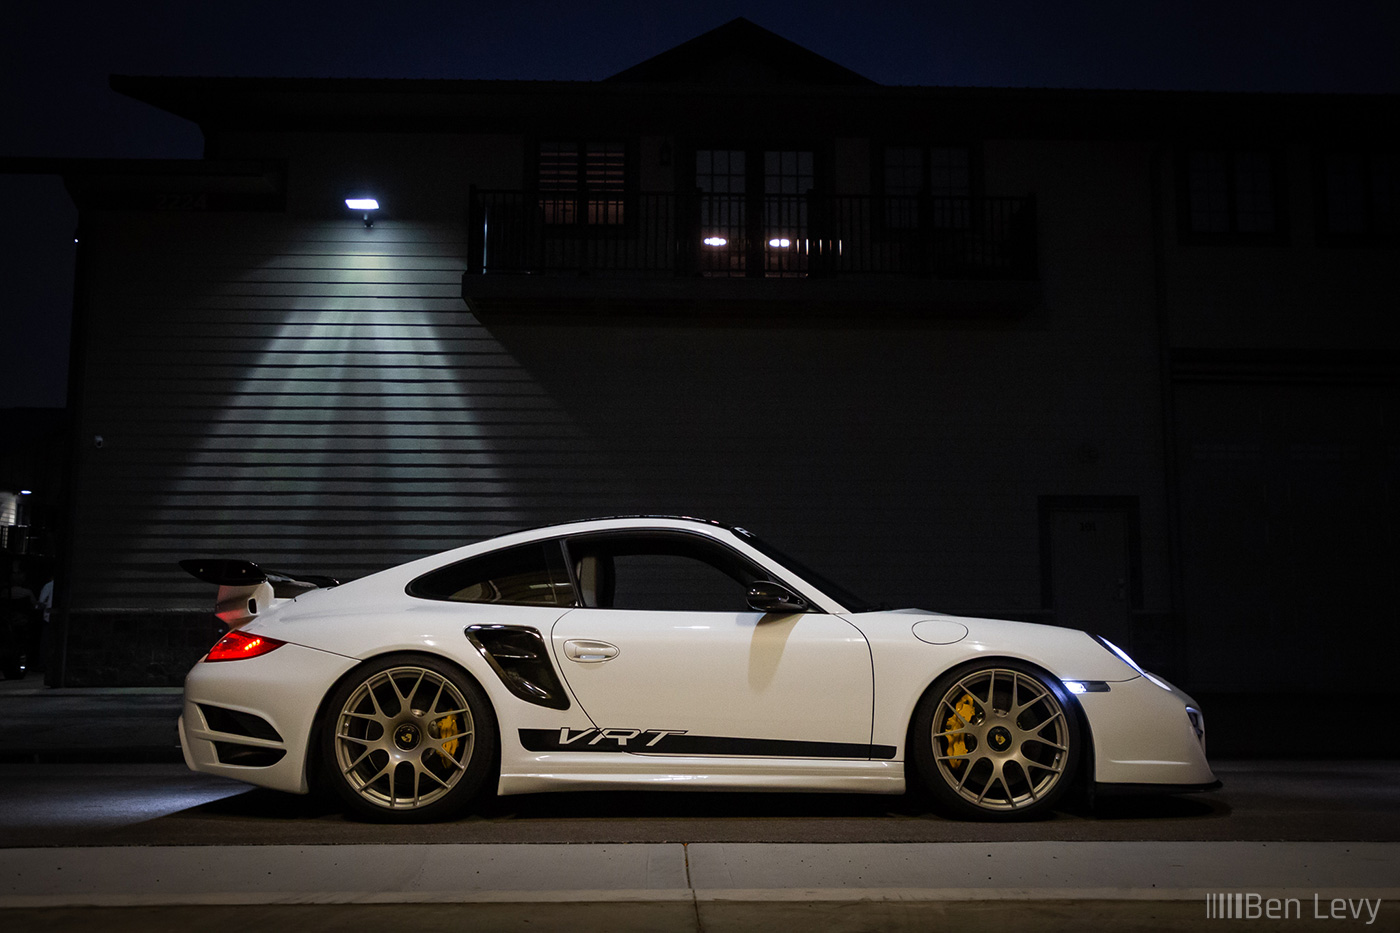 White Vorsteiner VRT Porsche 997 Turbo at Night